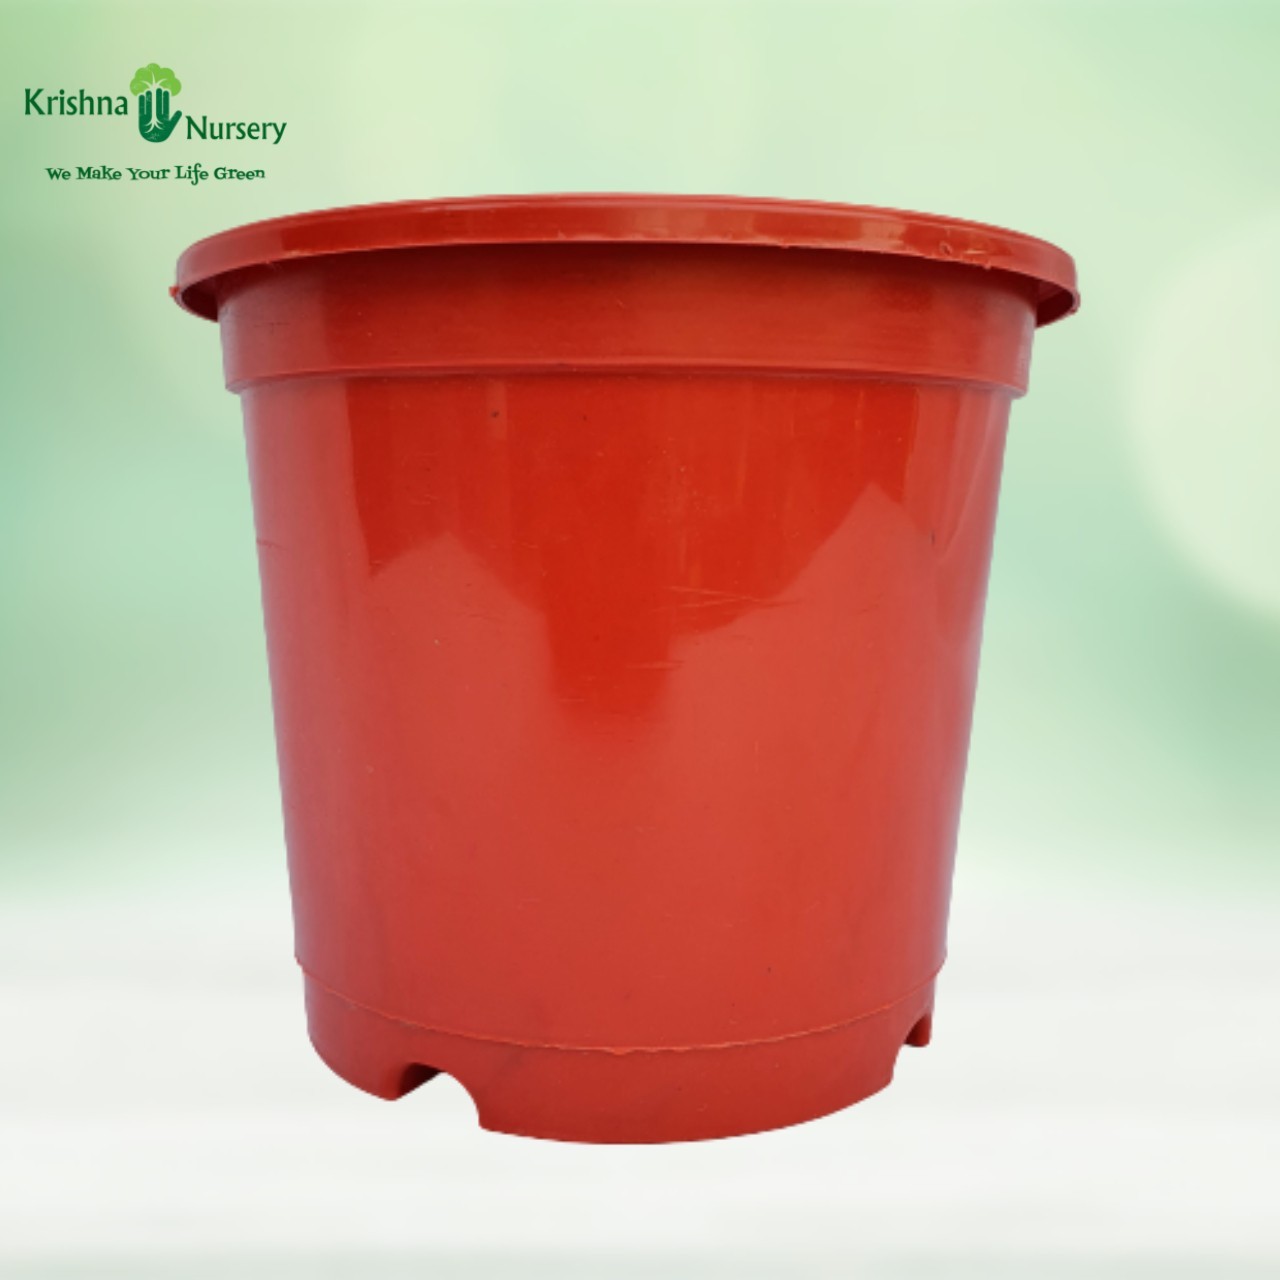 8" Red Pot - Plastic Pots -  - 8-red-pot -   